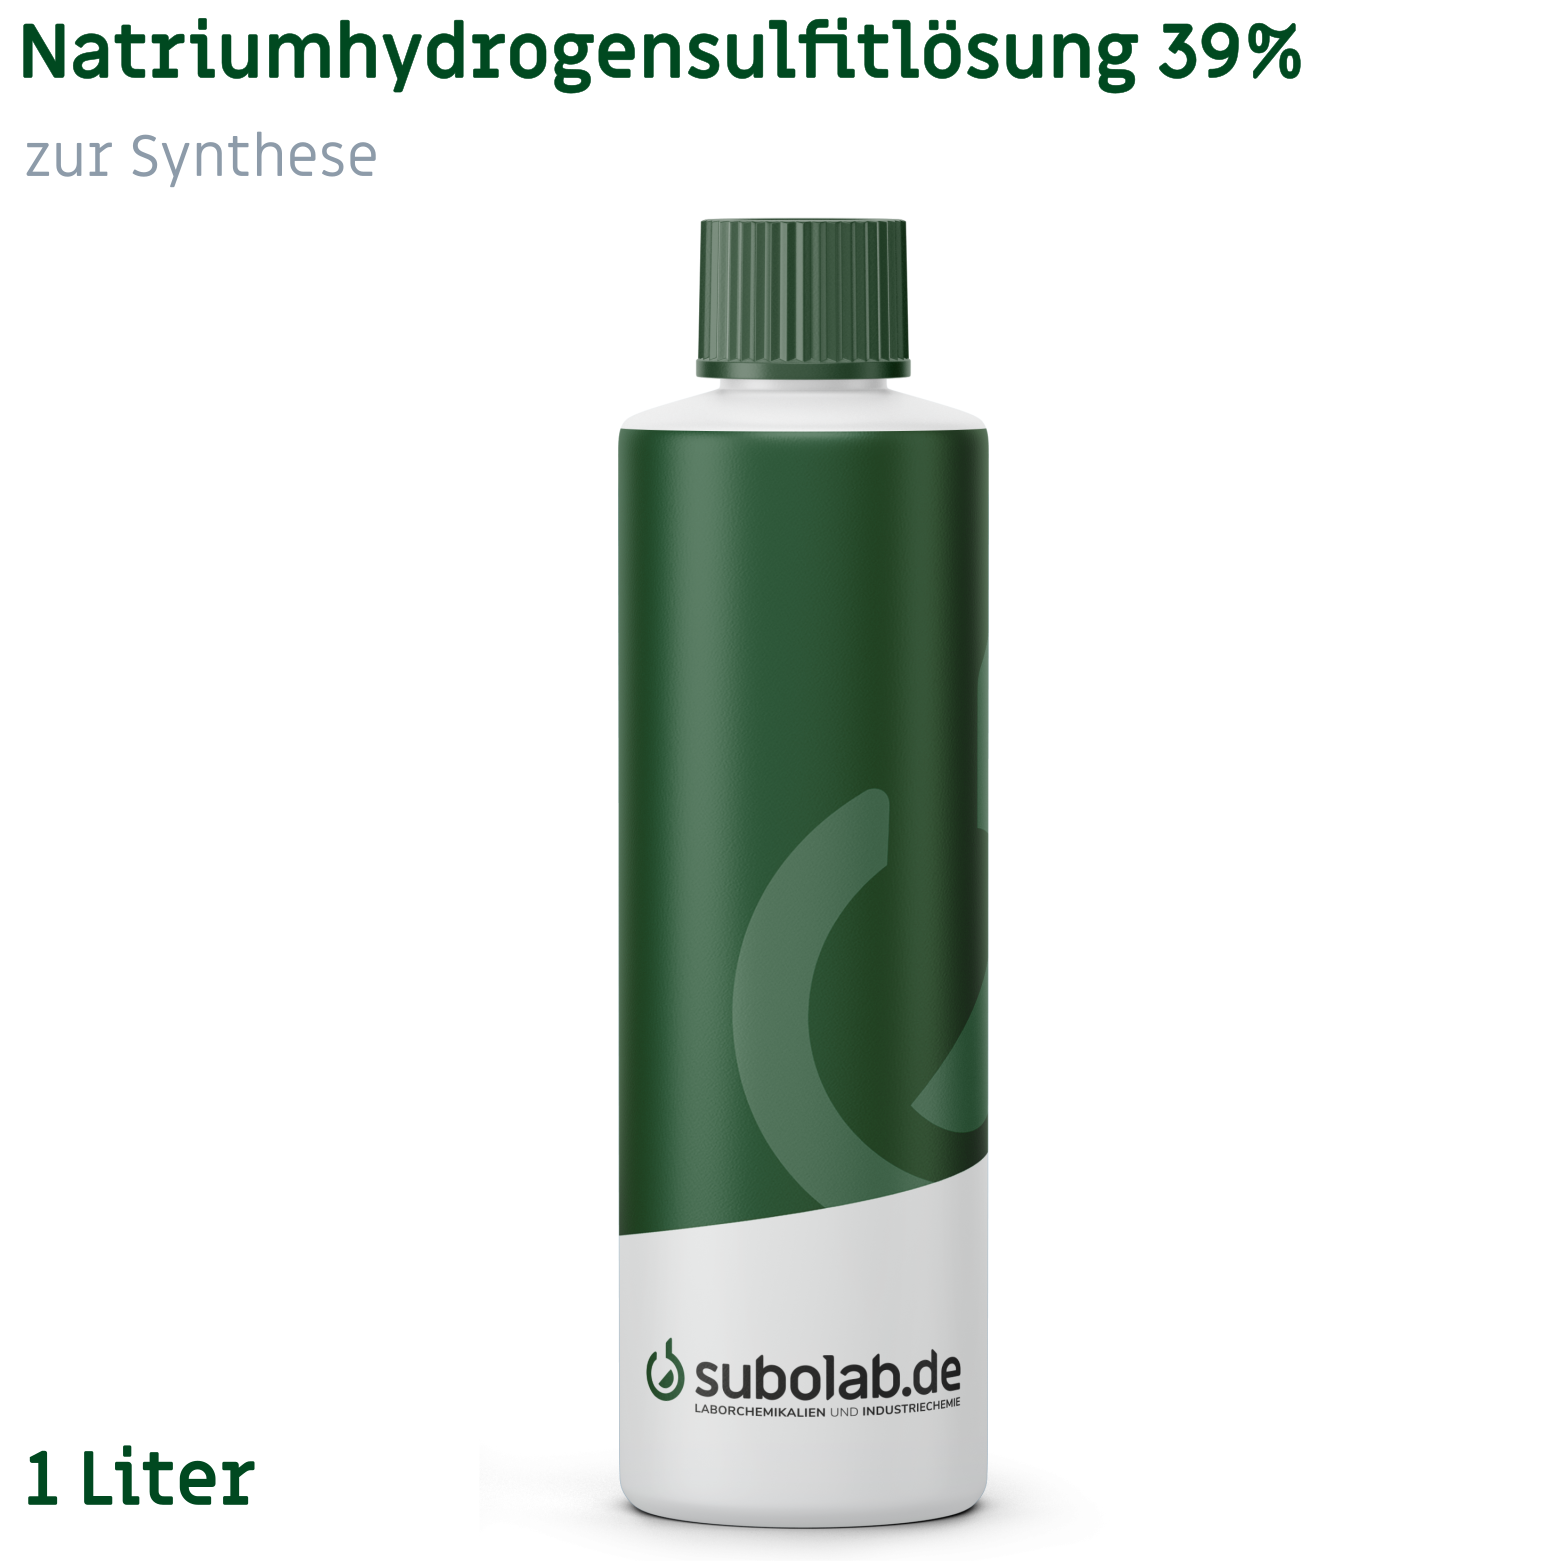 Bild von Natriumhydrogensulfitlösung 39% zur Synthese (1 Liter)